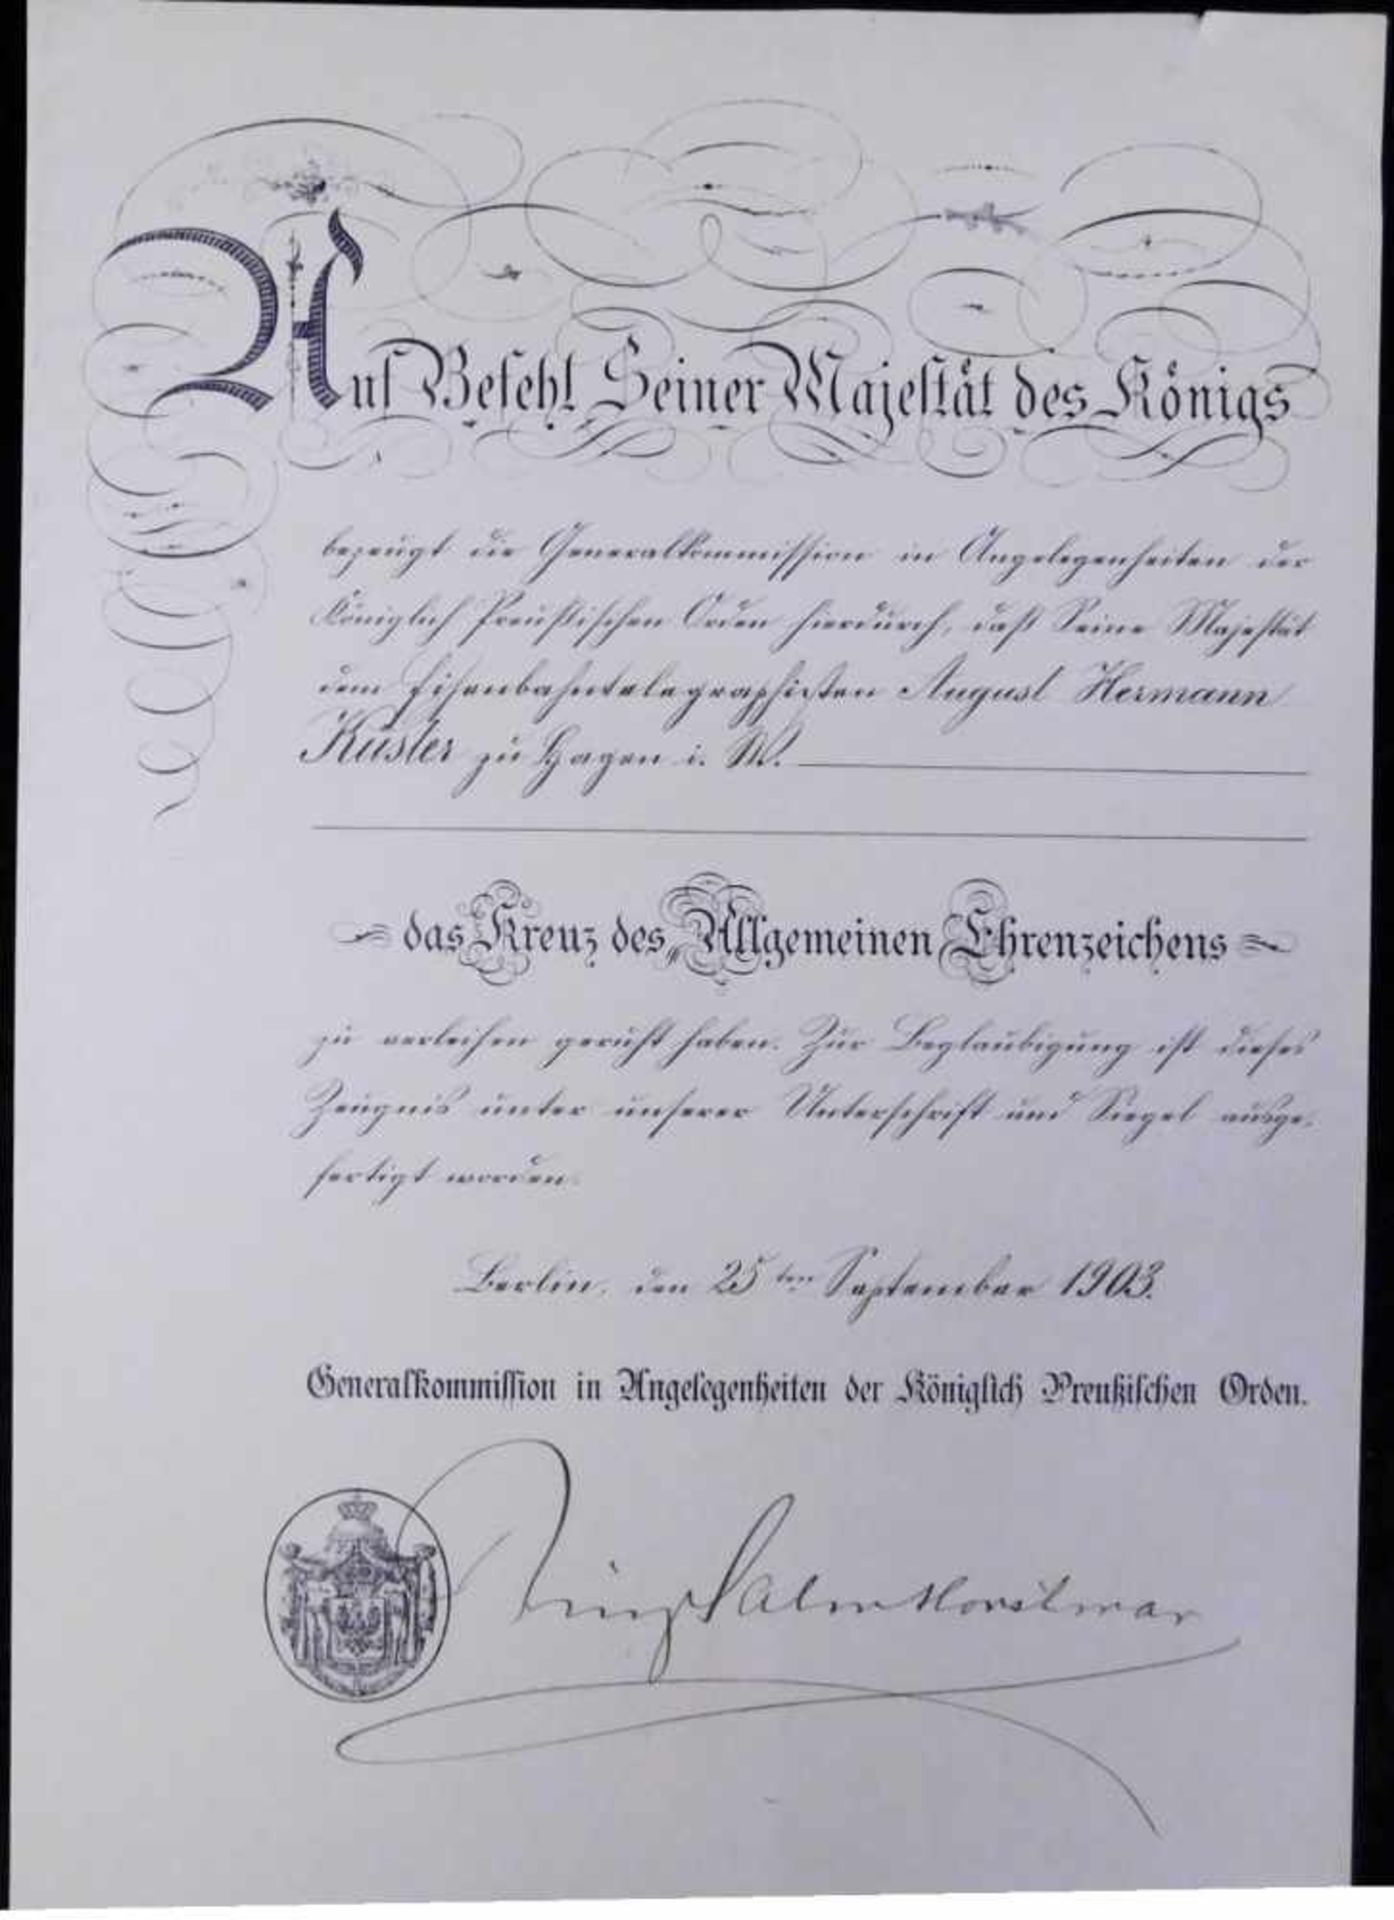 Urkunde Kreuz des Allgemeinen Ehrenzeichens 25.Sept. 1903, Auf Befehl seiner Majestät des